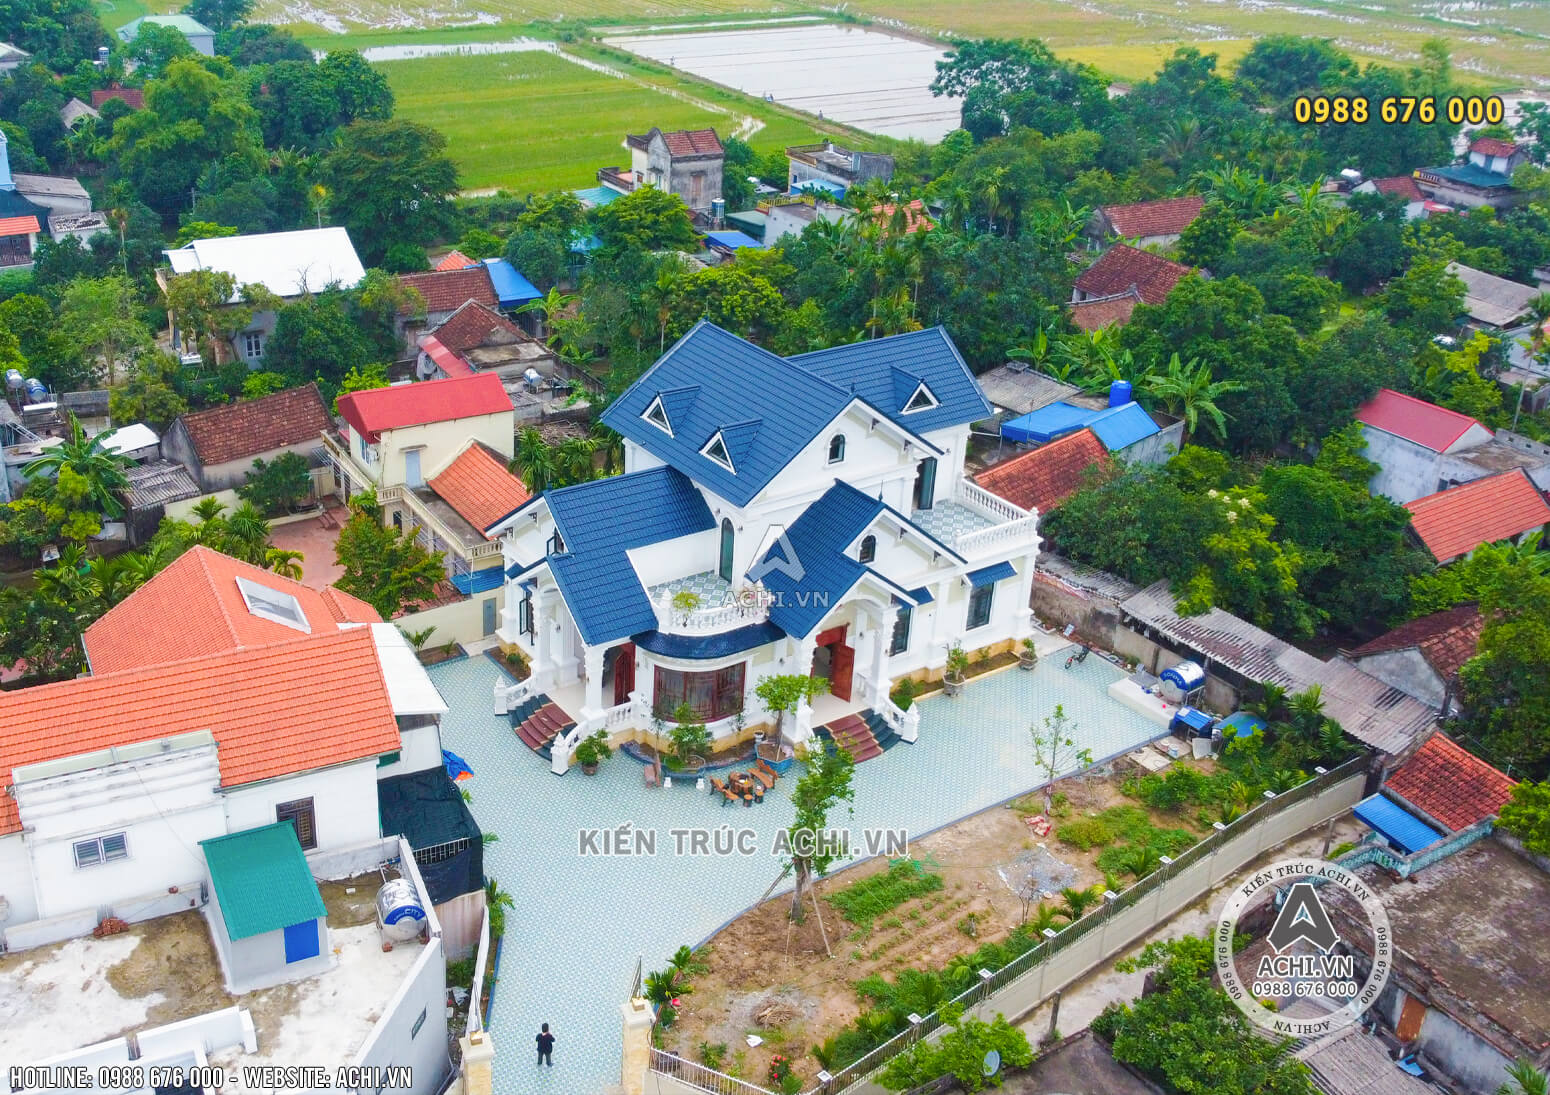 Toàn cảnh công trình thực tế mẫu nhà 1,5 tầng mái Thái khi nhìn từ trên cao xuống